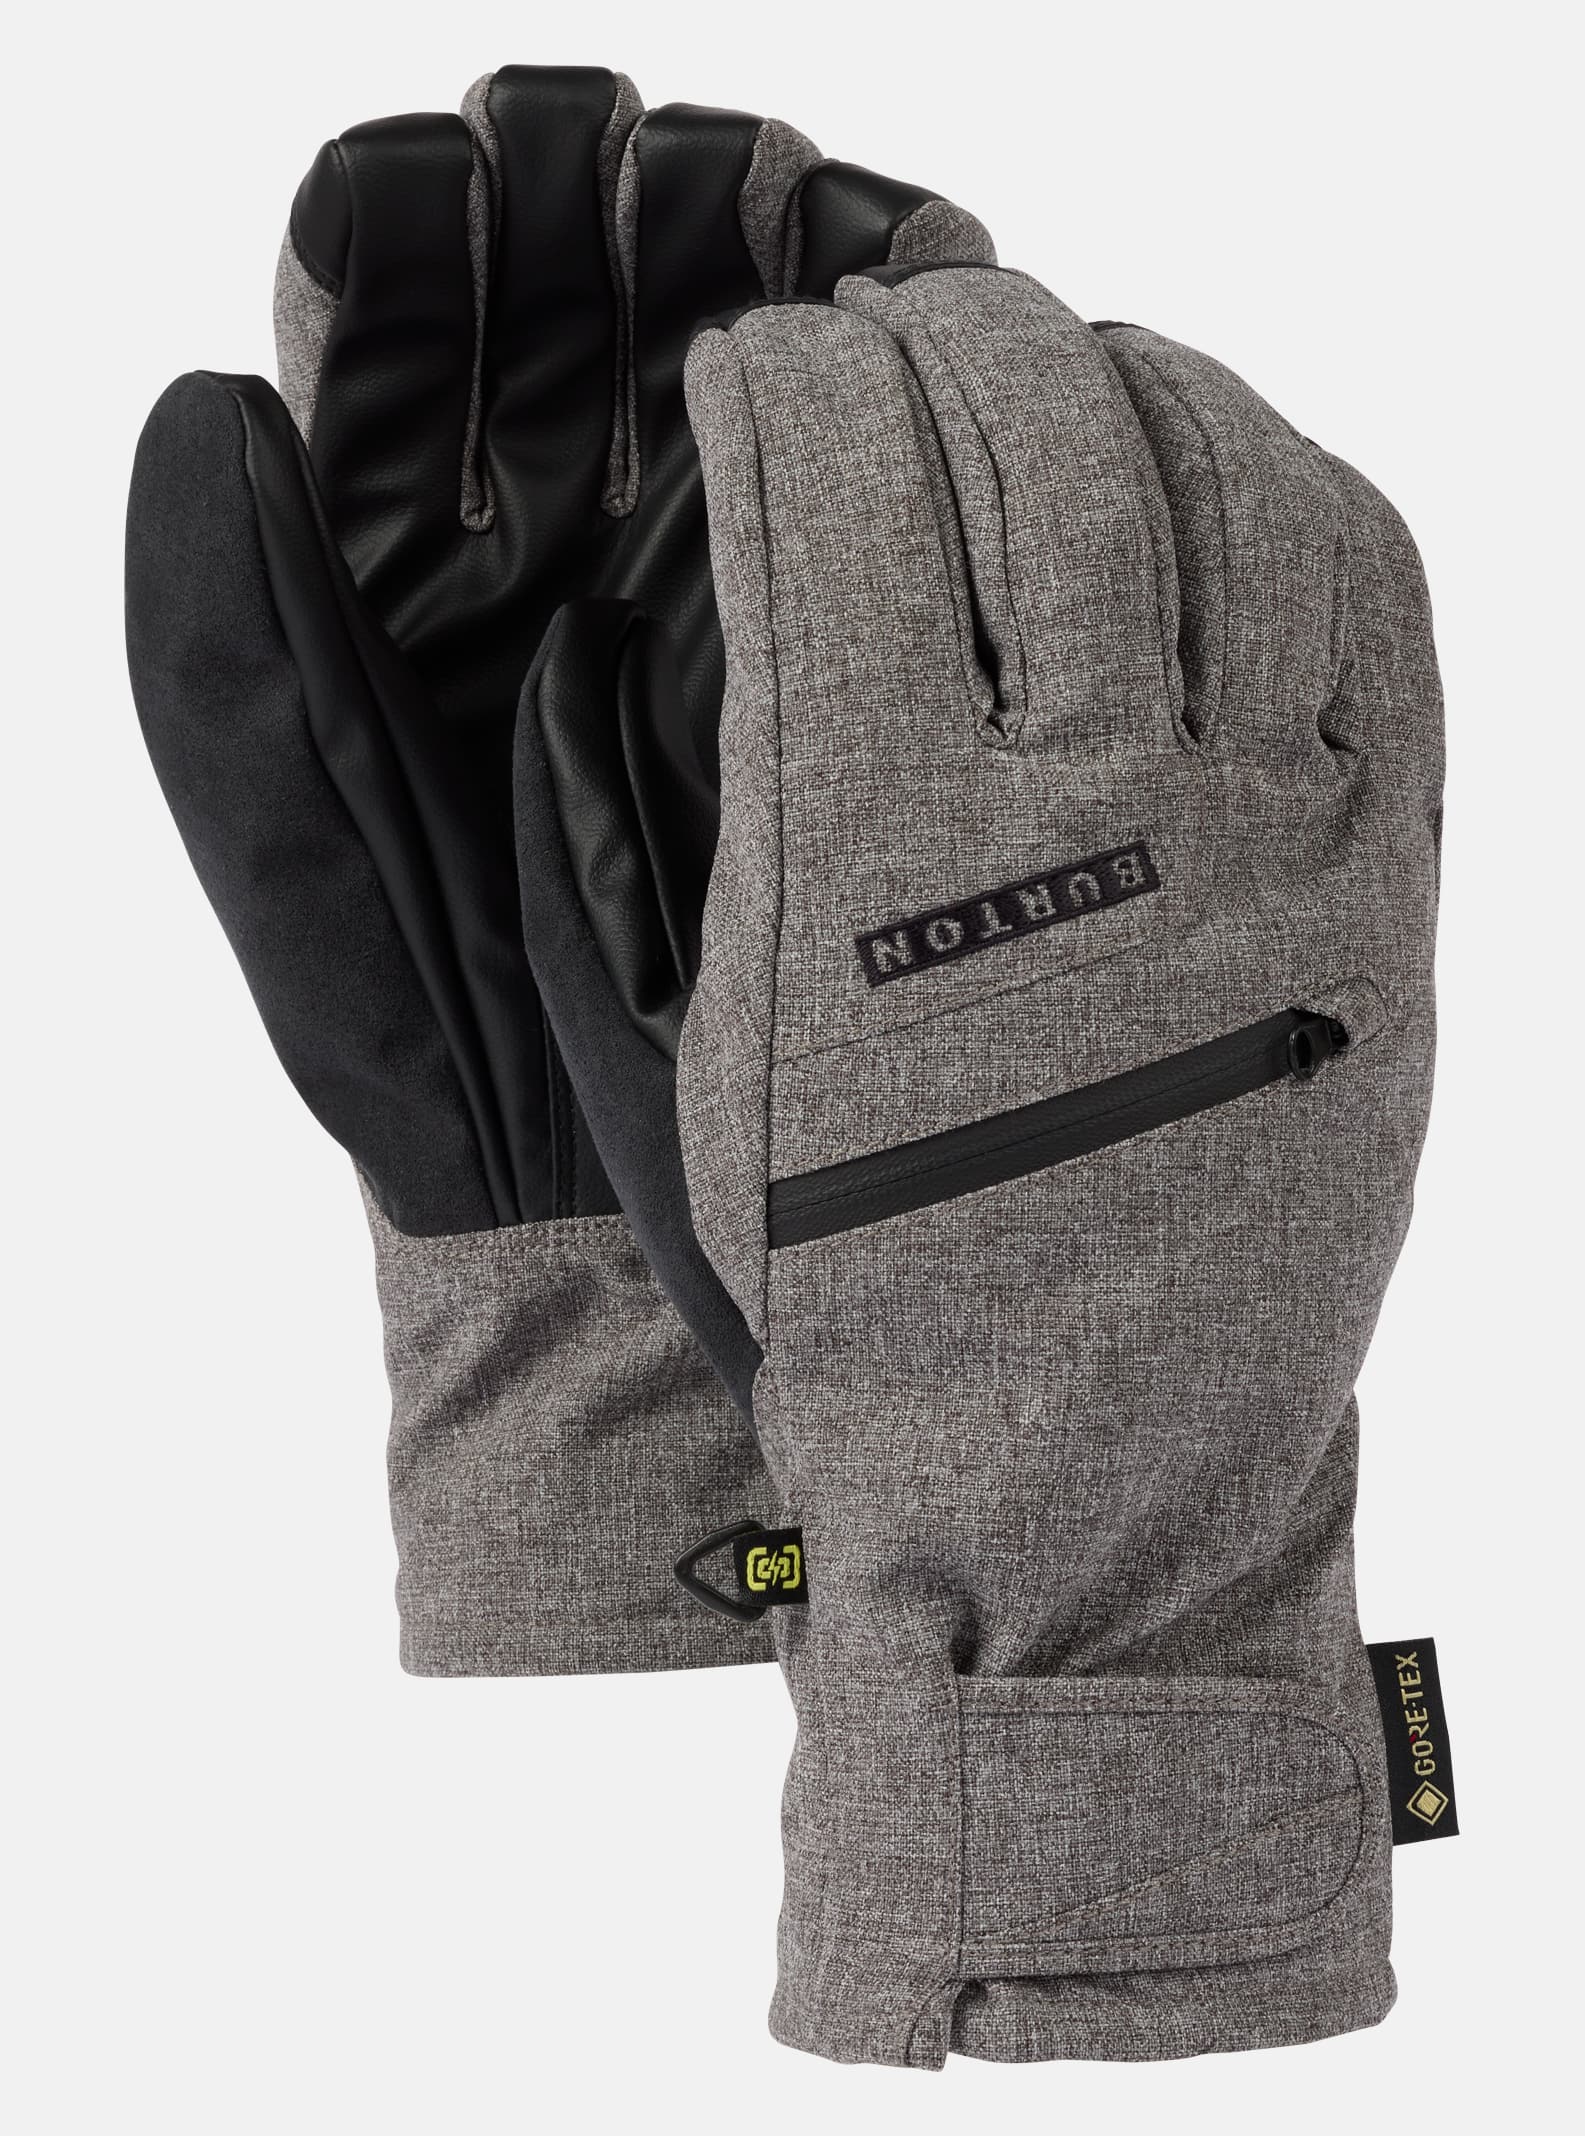 Men's Burton GORE-TEX Under Gloves | Winter Gloves | Burton.com 